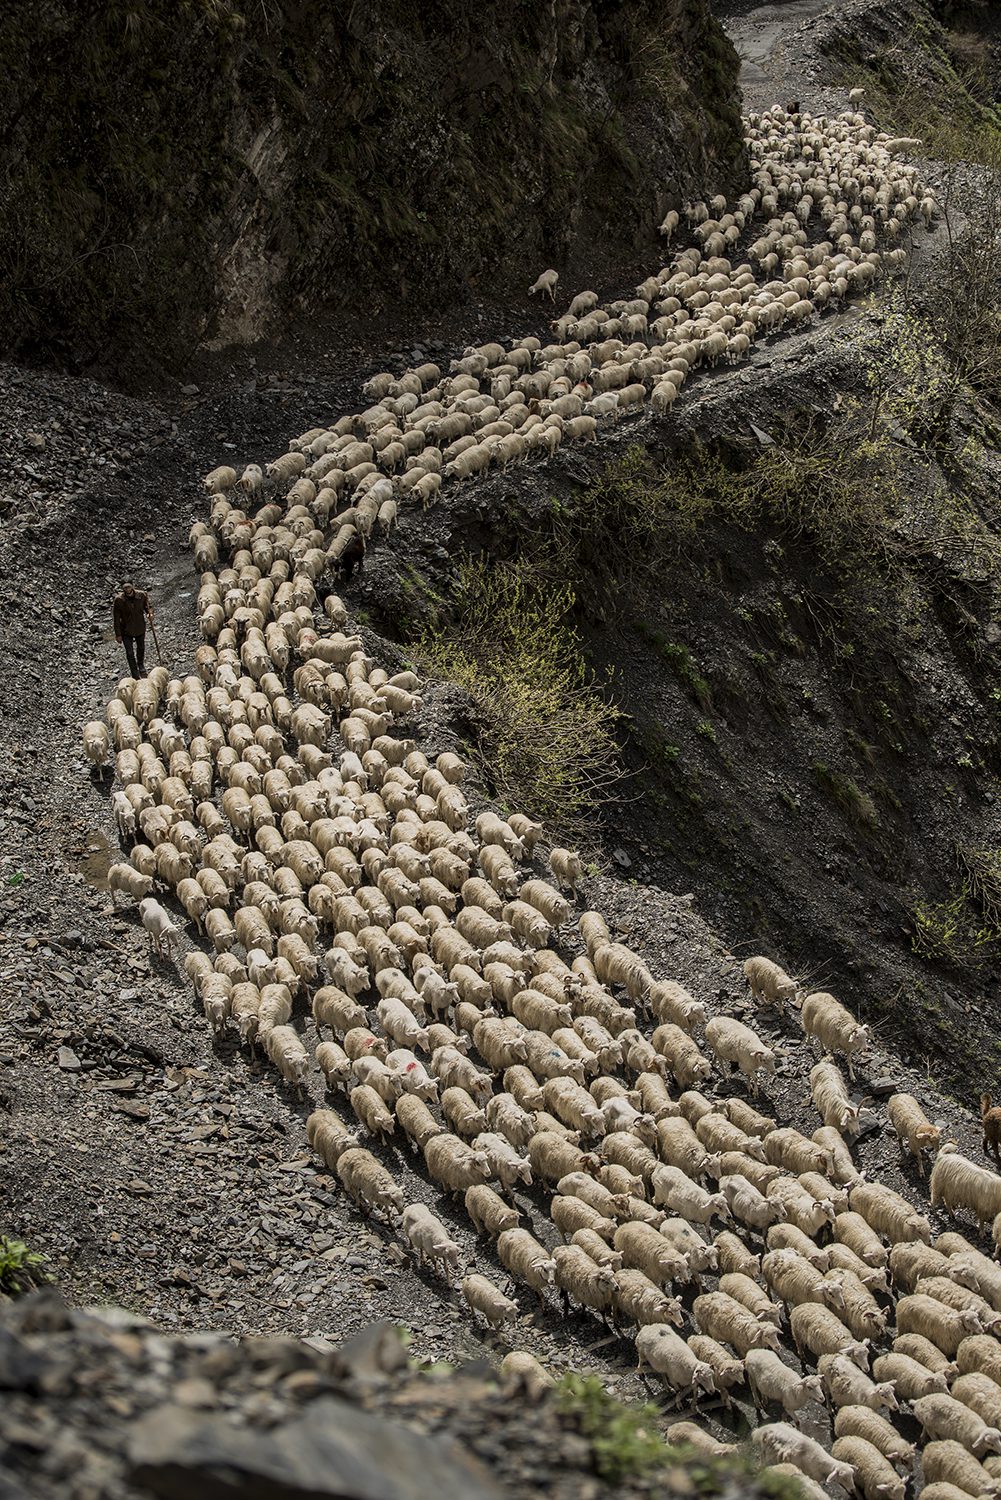 Shepherds, fot. Magdalena Konik